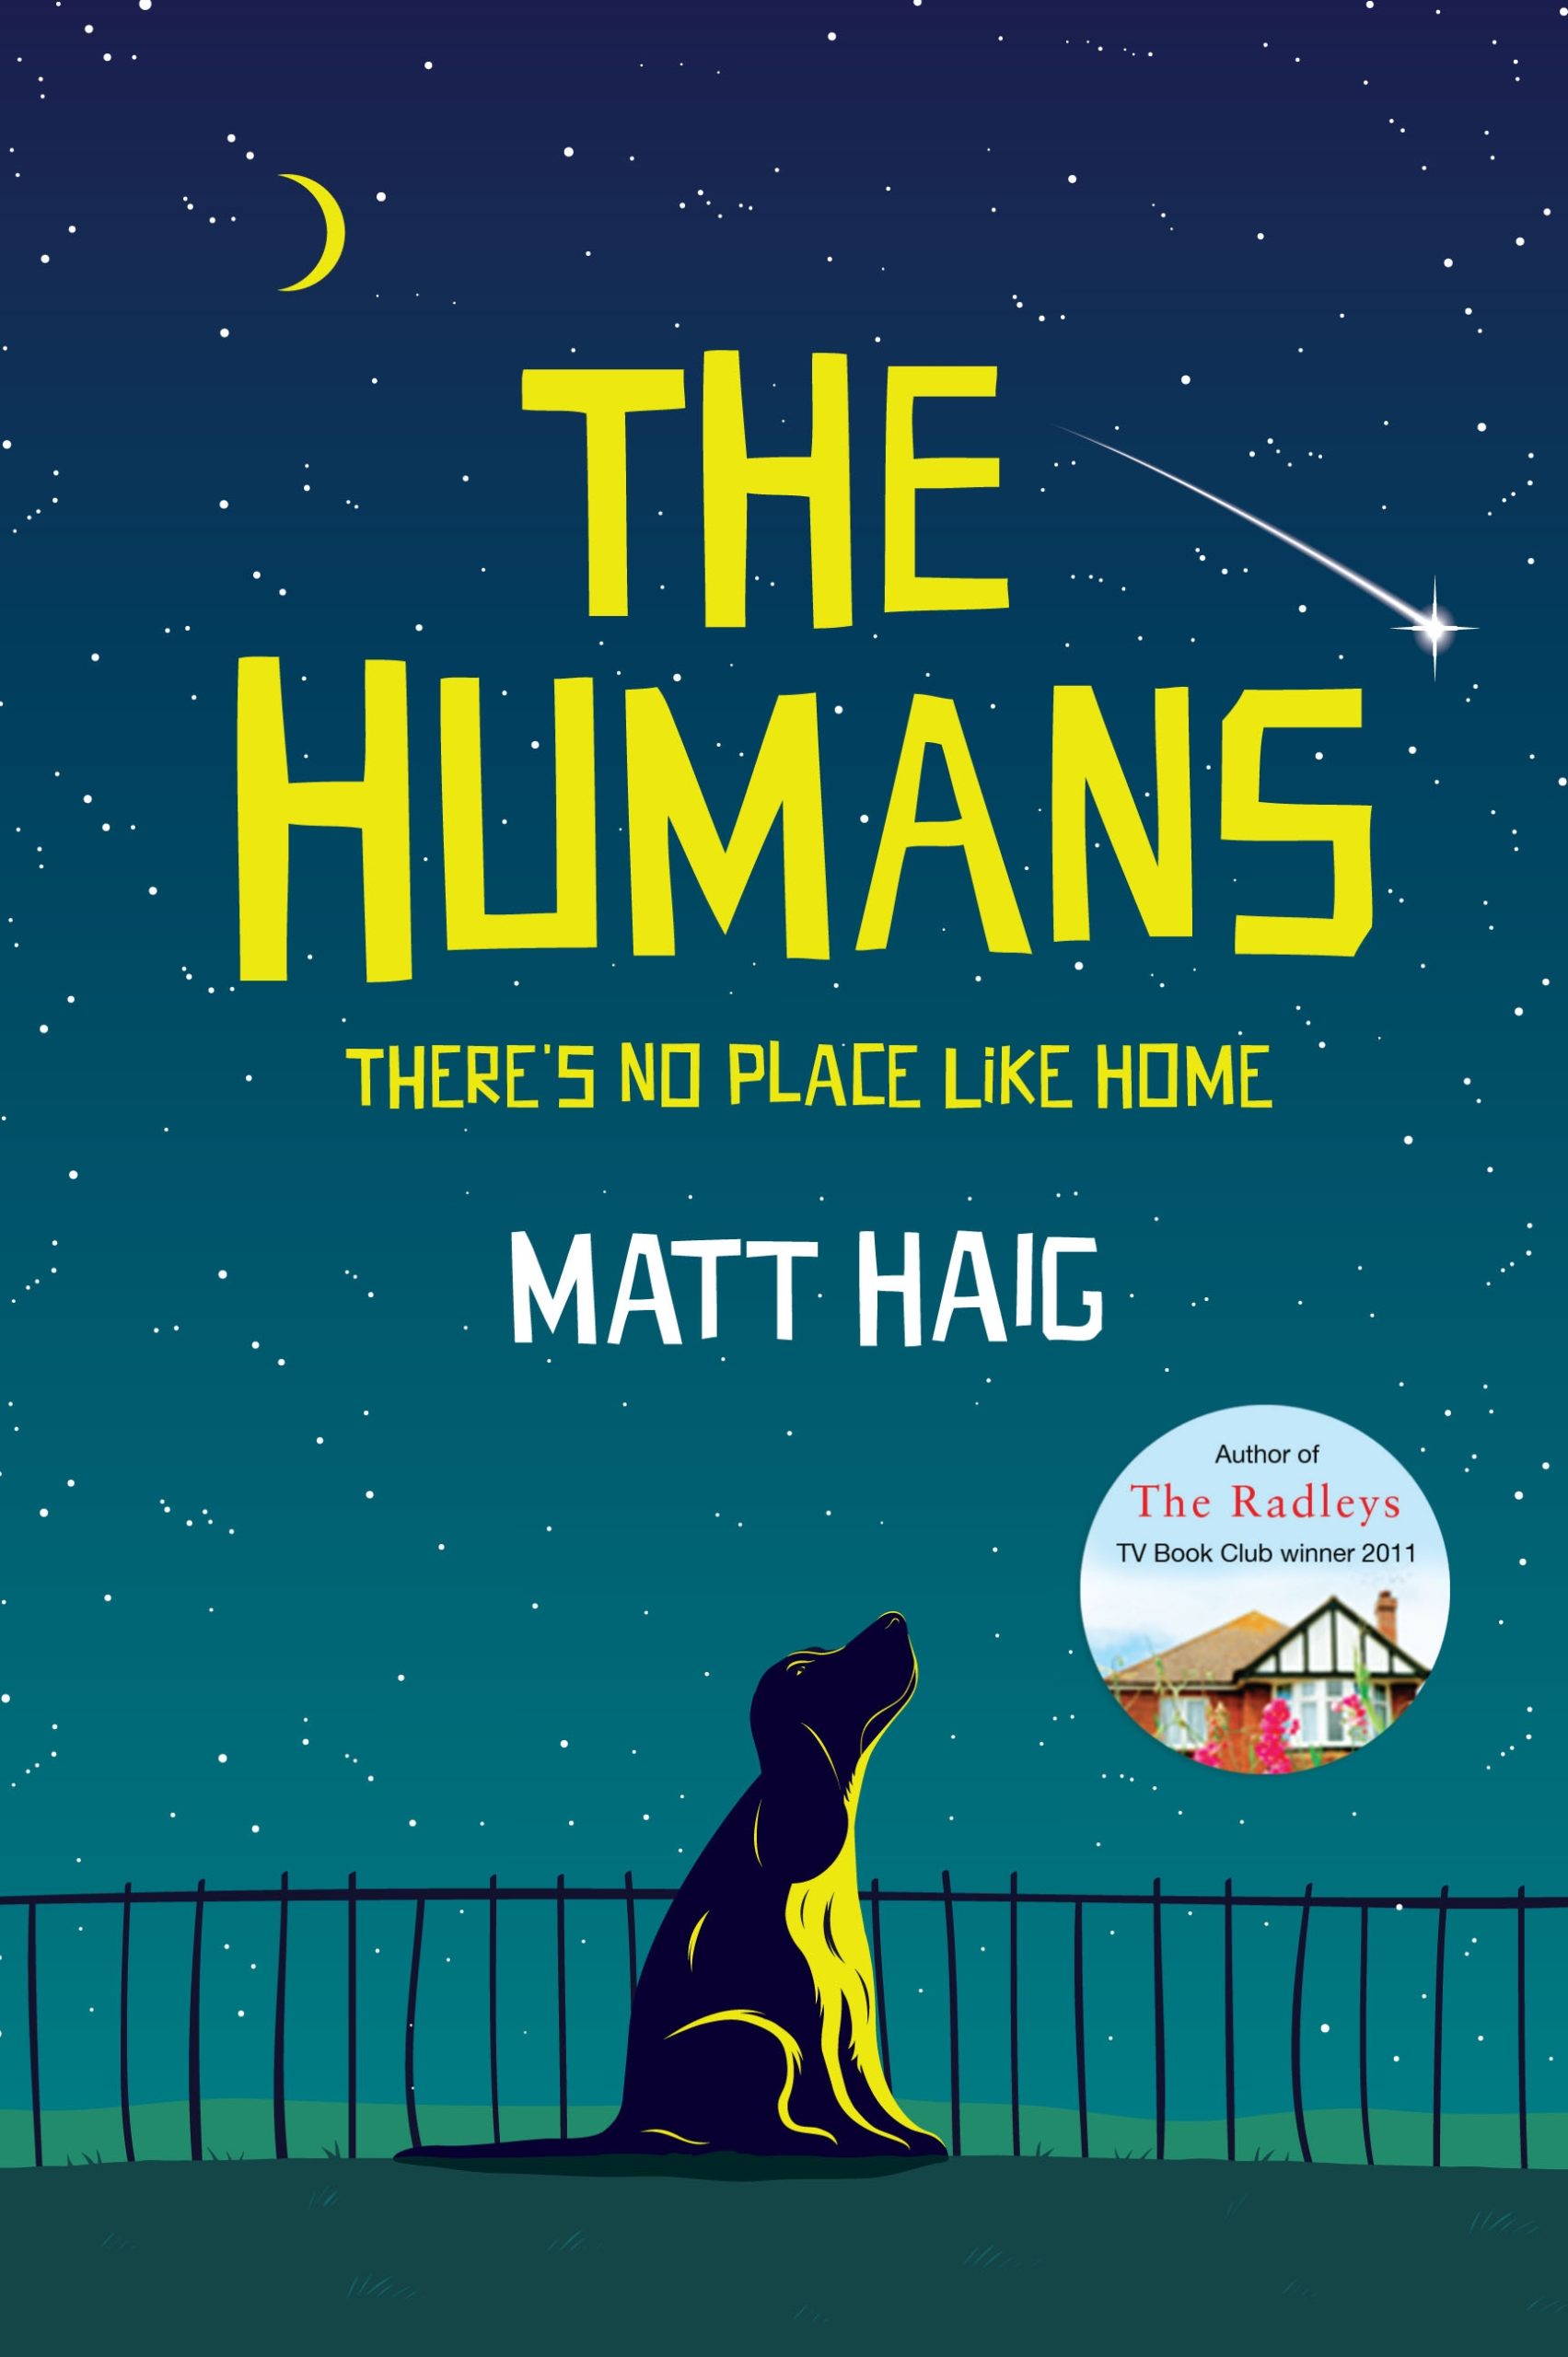 Author Q&A with Matt Haig